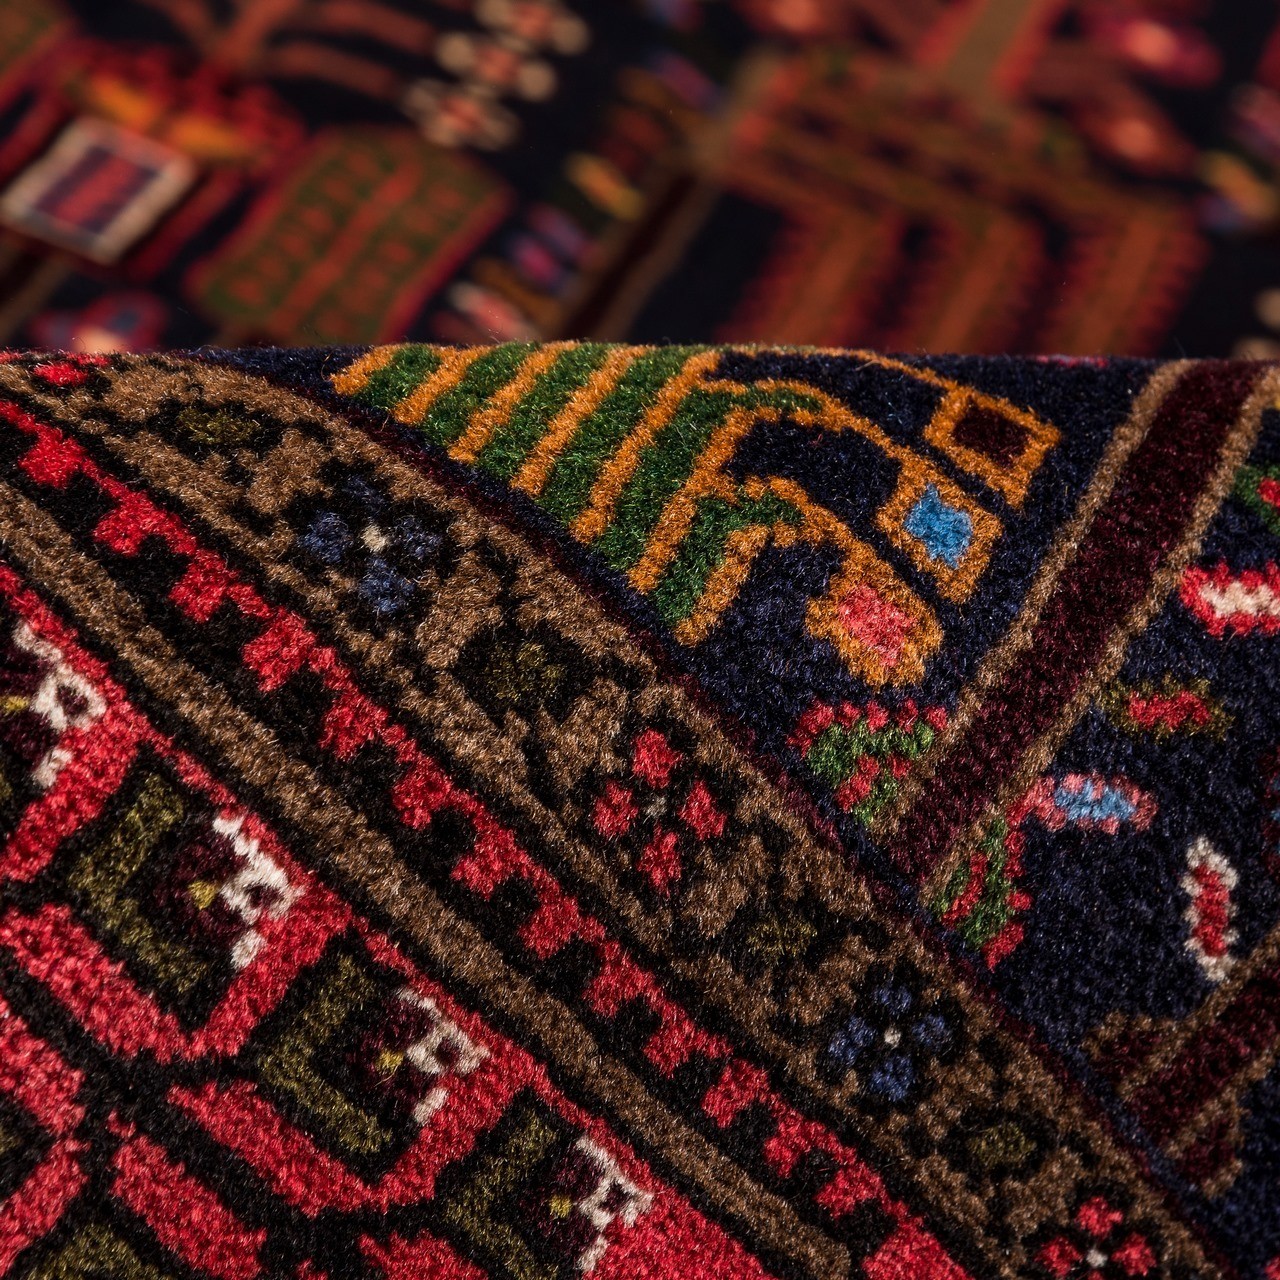 فرش دستباف ذرع و نیم کردستان کد 167040